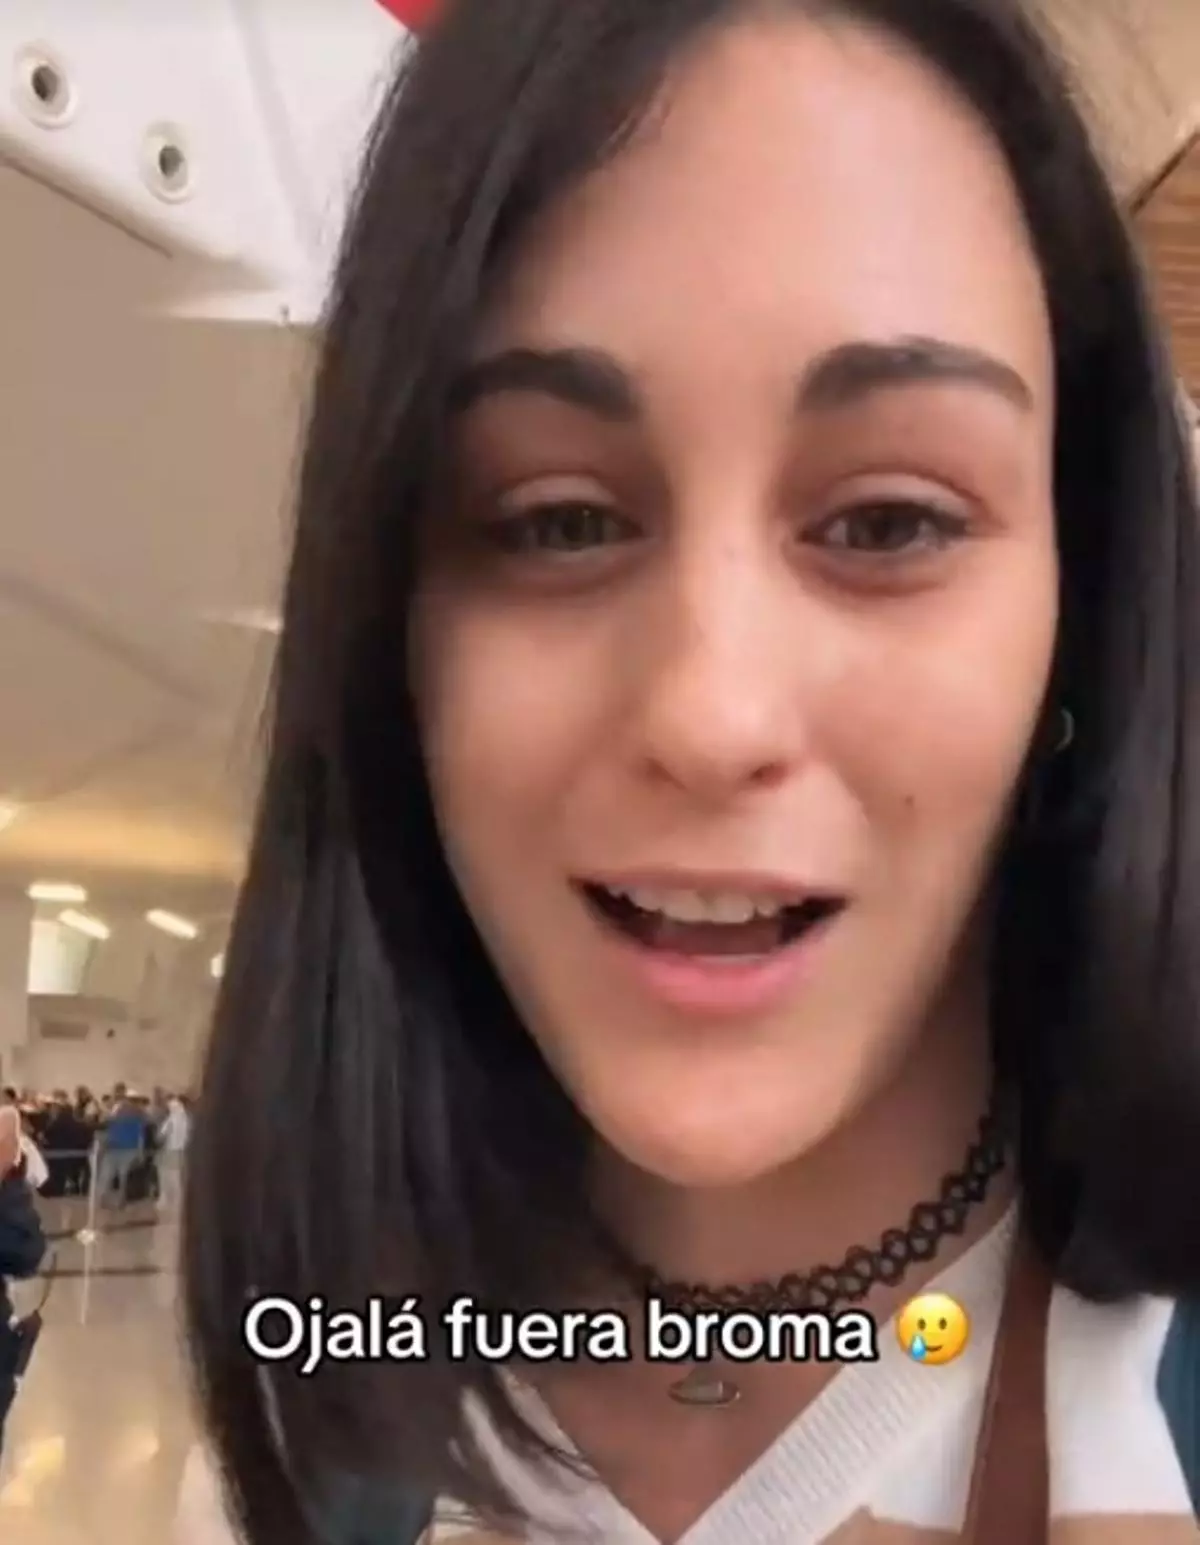 Esto es lo que no debes hacer nunca en un aeropuerto: una piloto influencer española cuenta que "casi la arrestan" al llegar a Marruecos